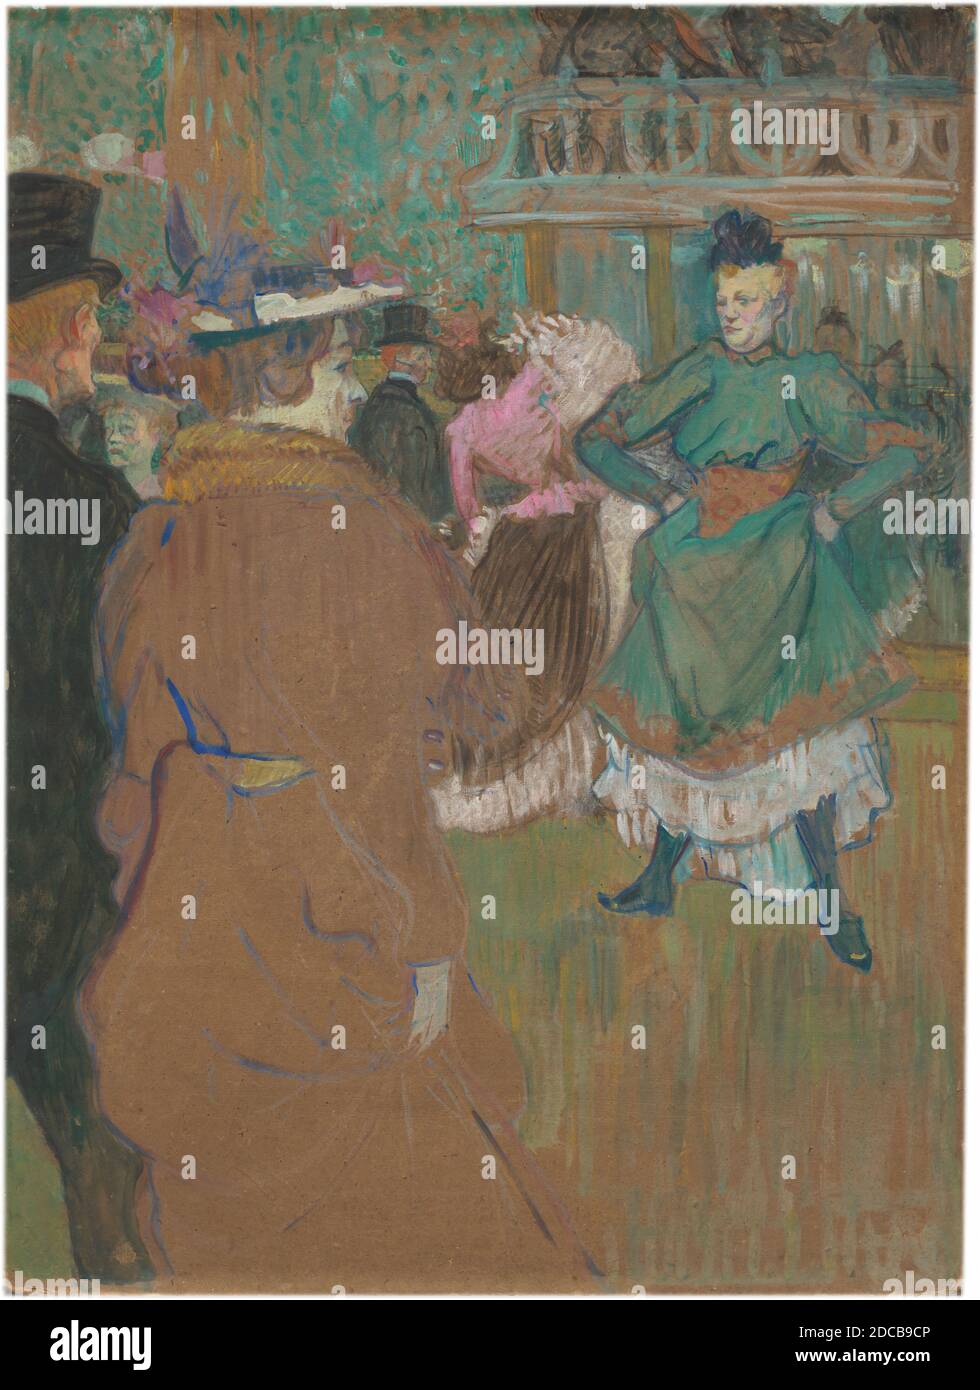 Henri de Toulouse-Lautrec, (artiste), français, 1864 - 1901, Quadrille au Moulin Rouge, 1892, huile sur carton, total: 81 x 59.8 cm (31 7/8 x 23 9/16 po), encadré: 104.1 x 83.5 cm (41 x 32 7/8 po Banque D'Images